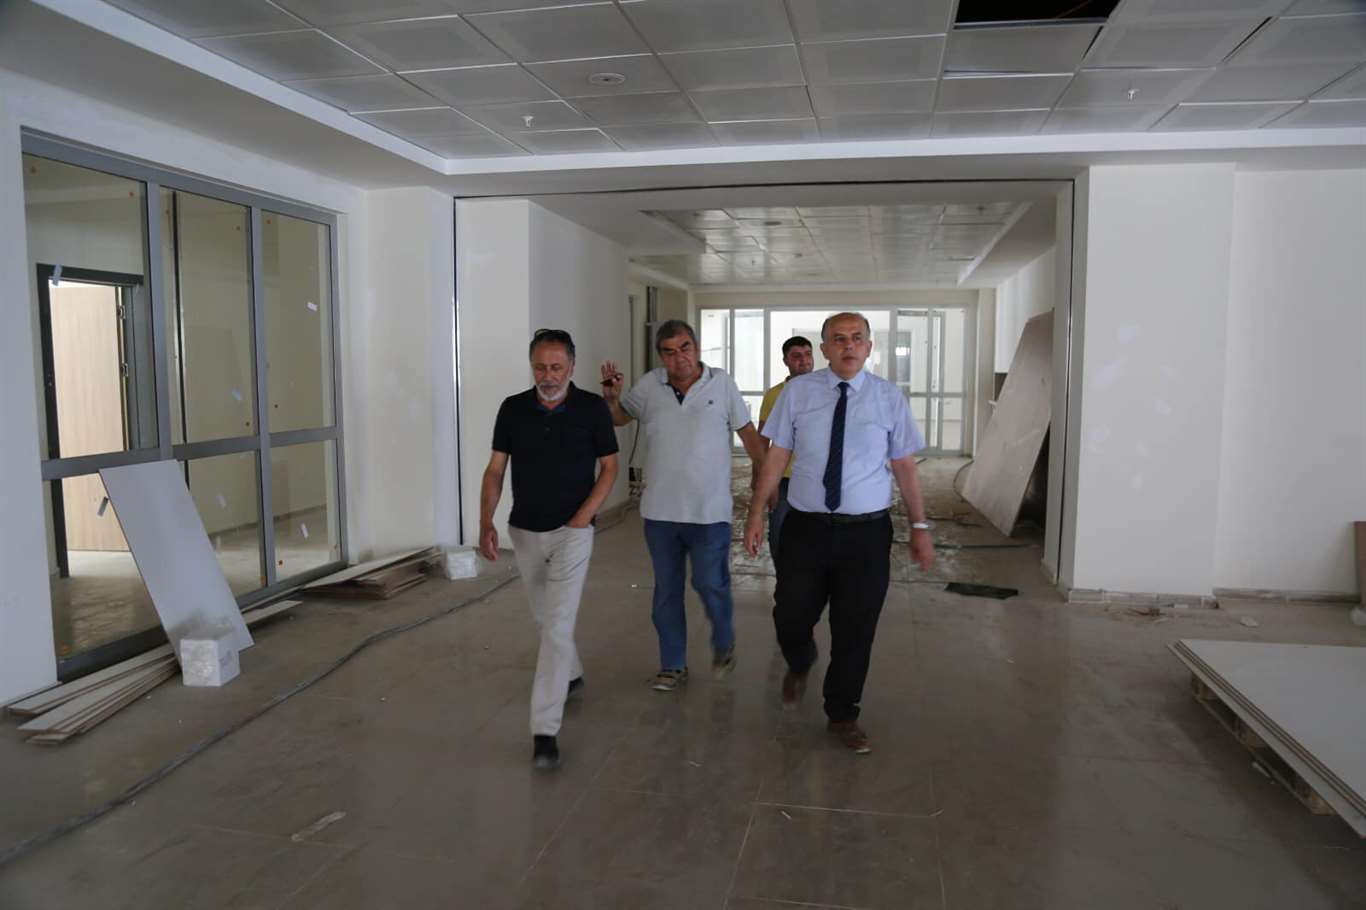          Menteşe'de 4 Bin 48 kişilik yurt inşaatı devam ediyor haberi